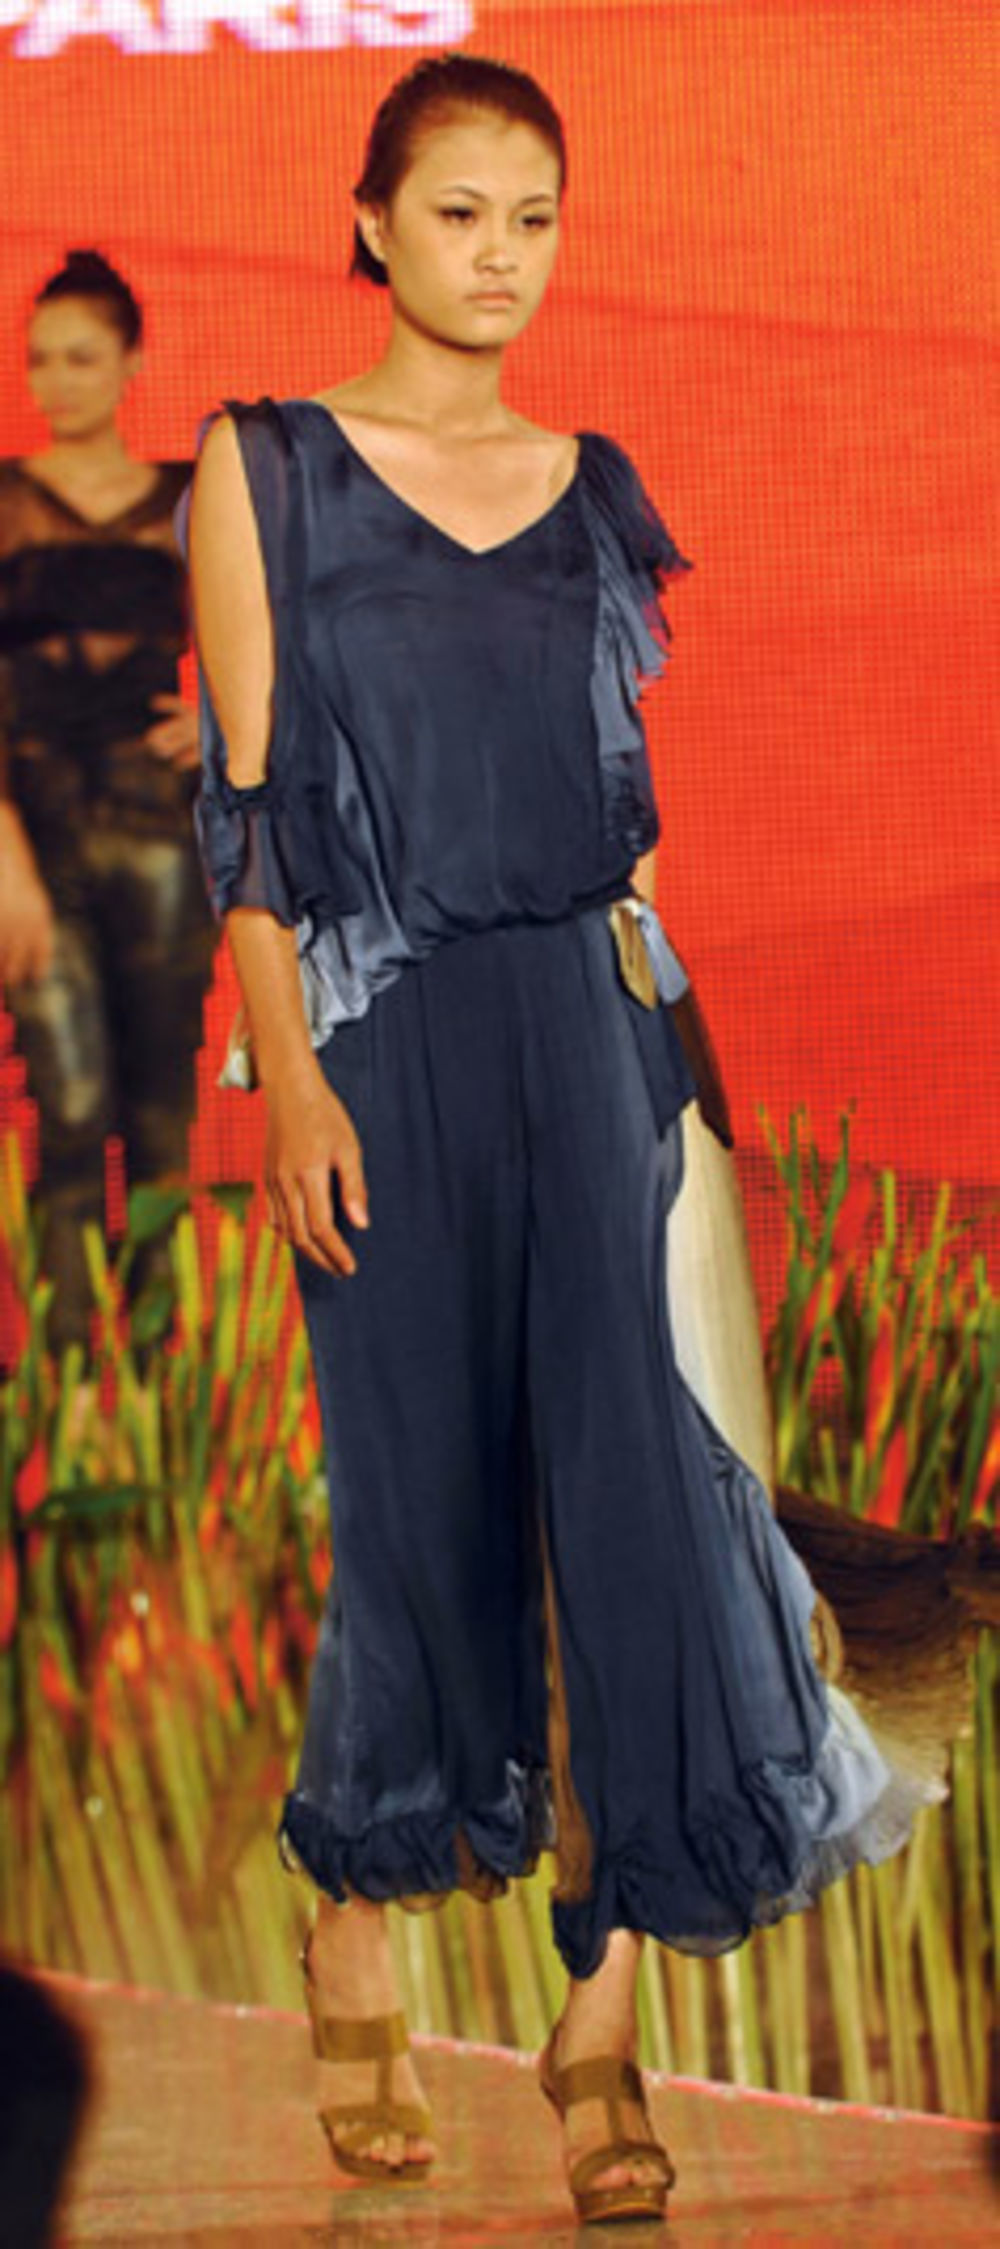 Vedre i vesele boje obeležile su poslednju Nedelju mode u 2011. u Vijetnamu, a na njoj je određen i trend za buduće tople dane - šareni deseni i asesoari od cveća.